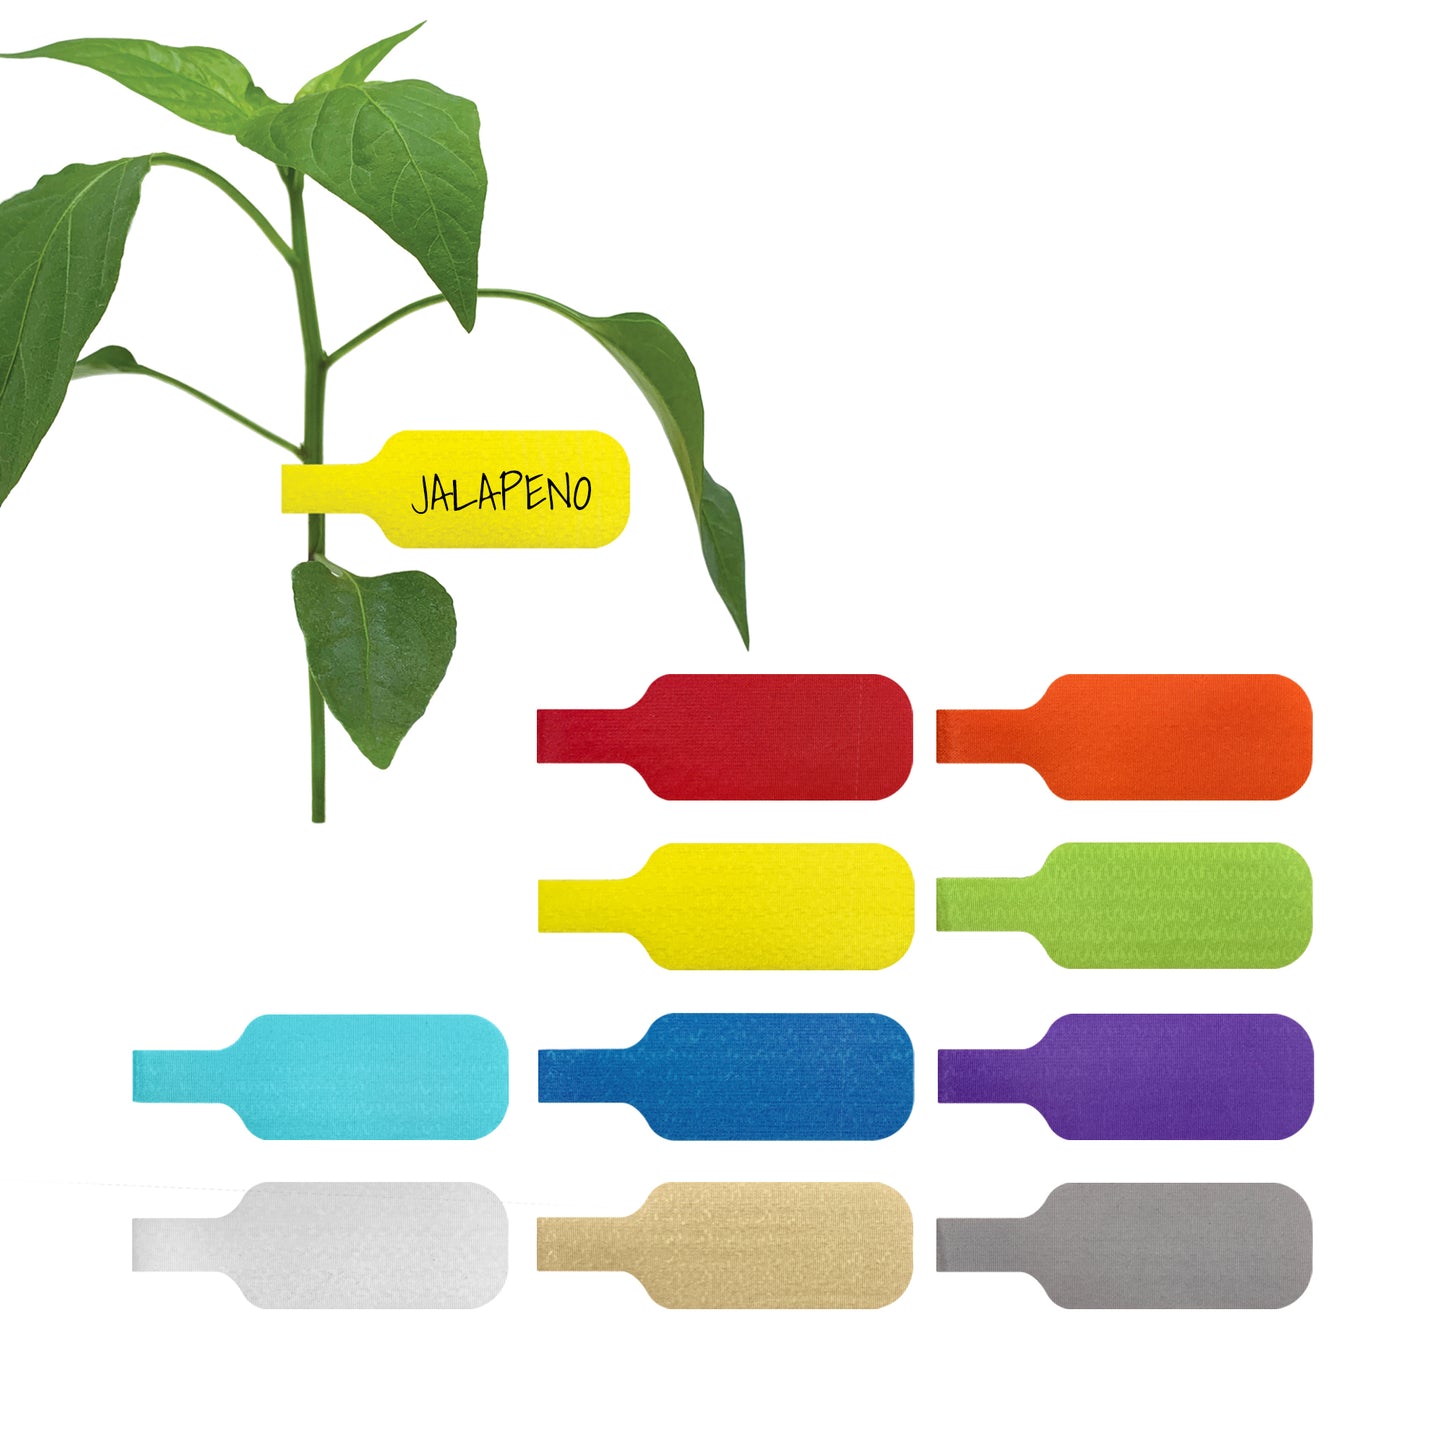 Plant Labels, Medium (10-Pack) - Wrap-It Storage